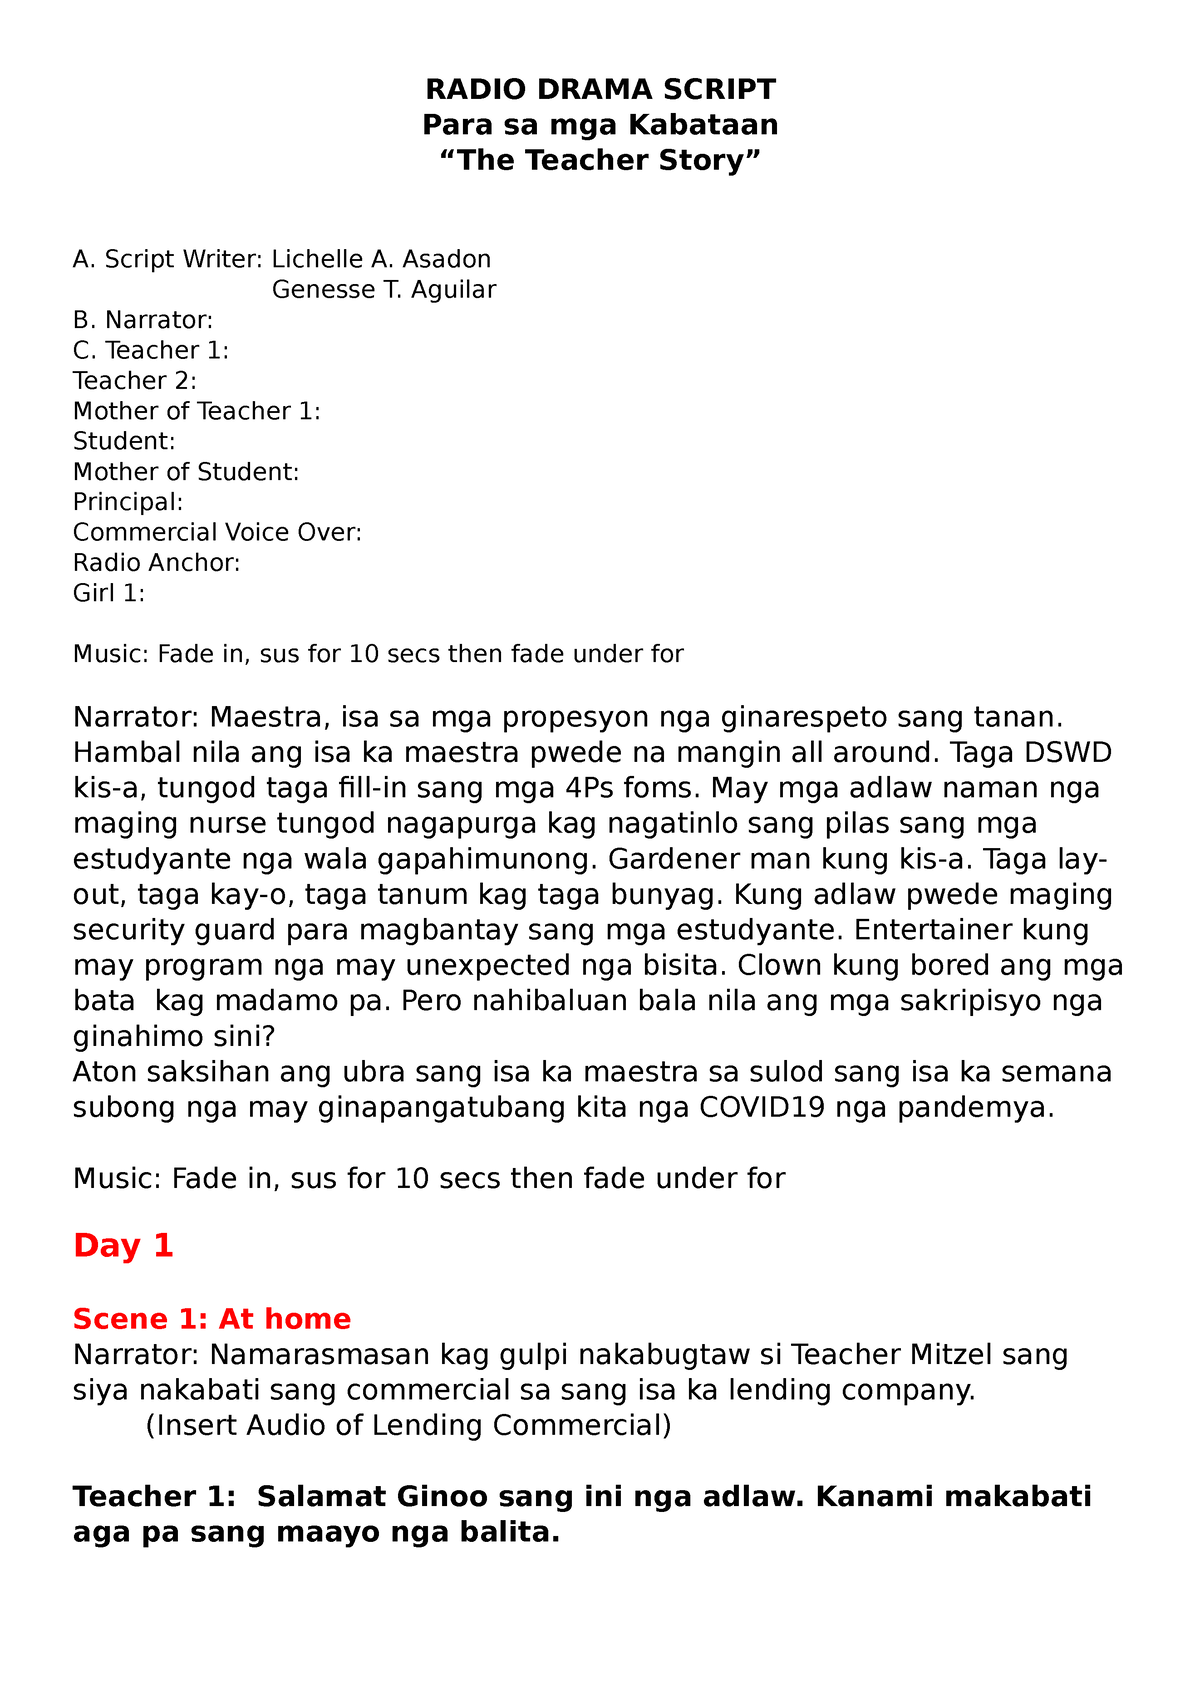 radio-drama-script-working-task-after-class-radio-drama-script-para-sa-mga-kabataan-the